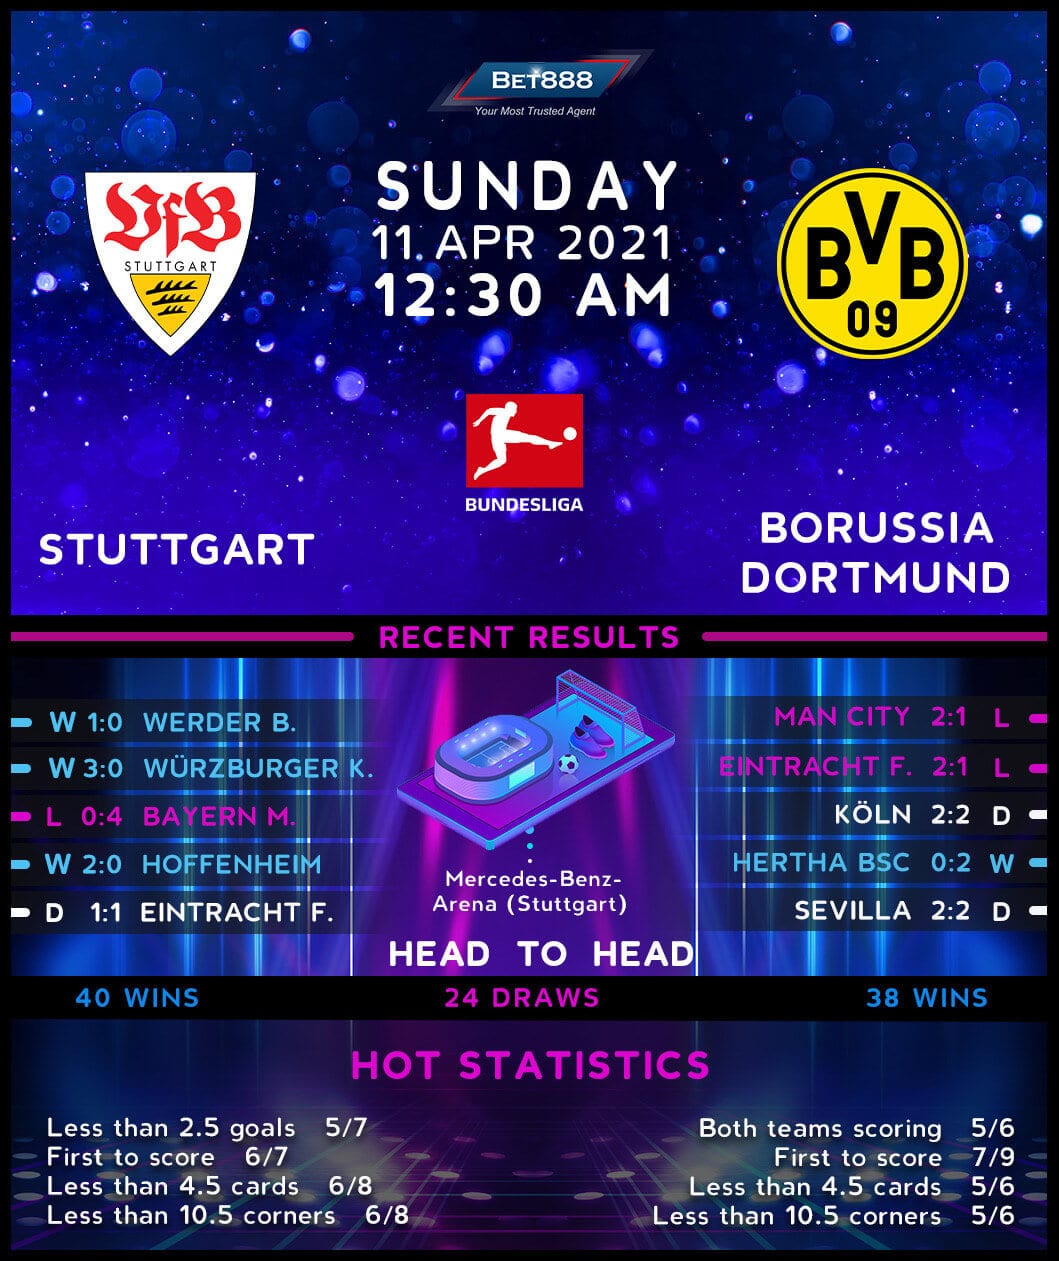 Bet888win: Stuttgart vs Borussia Dortmund